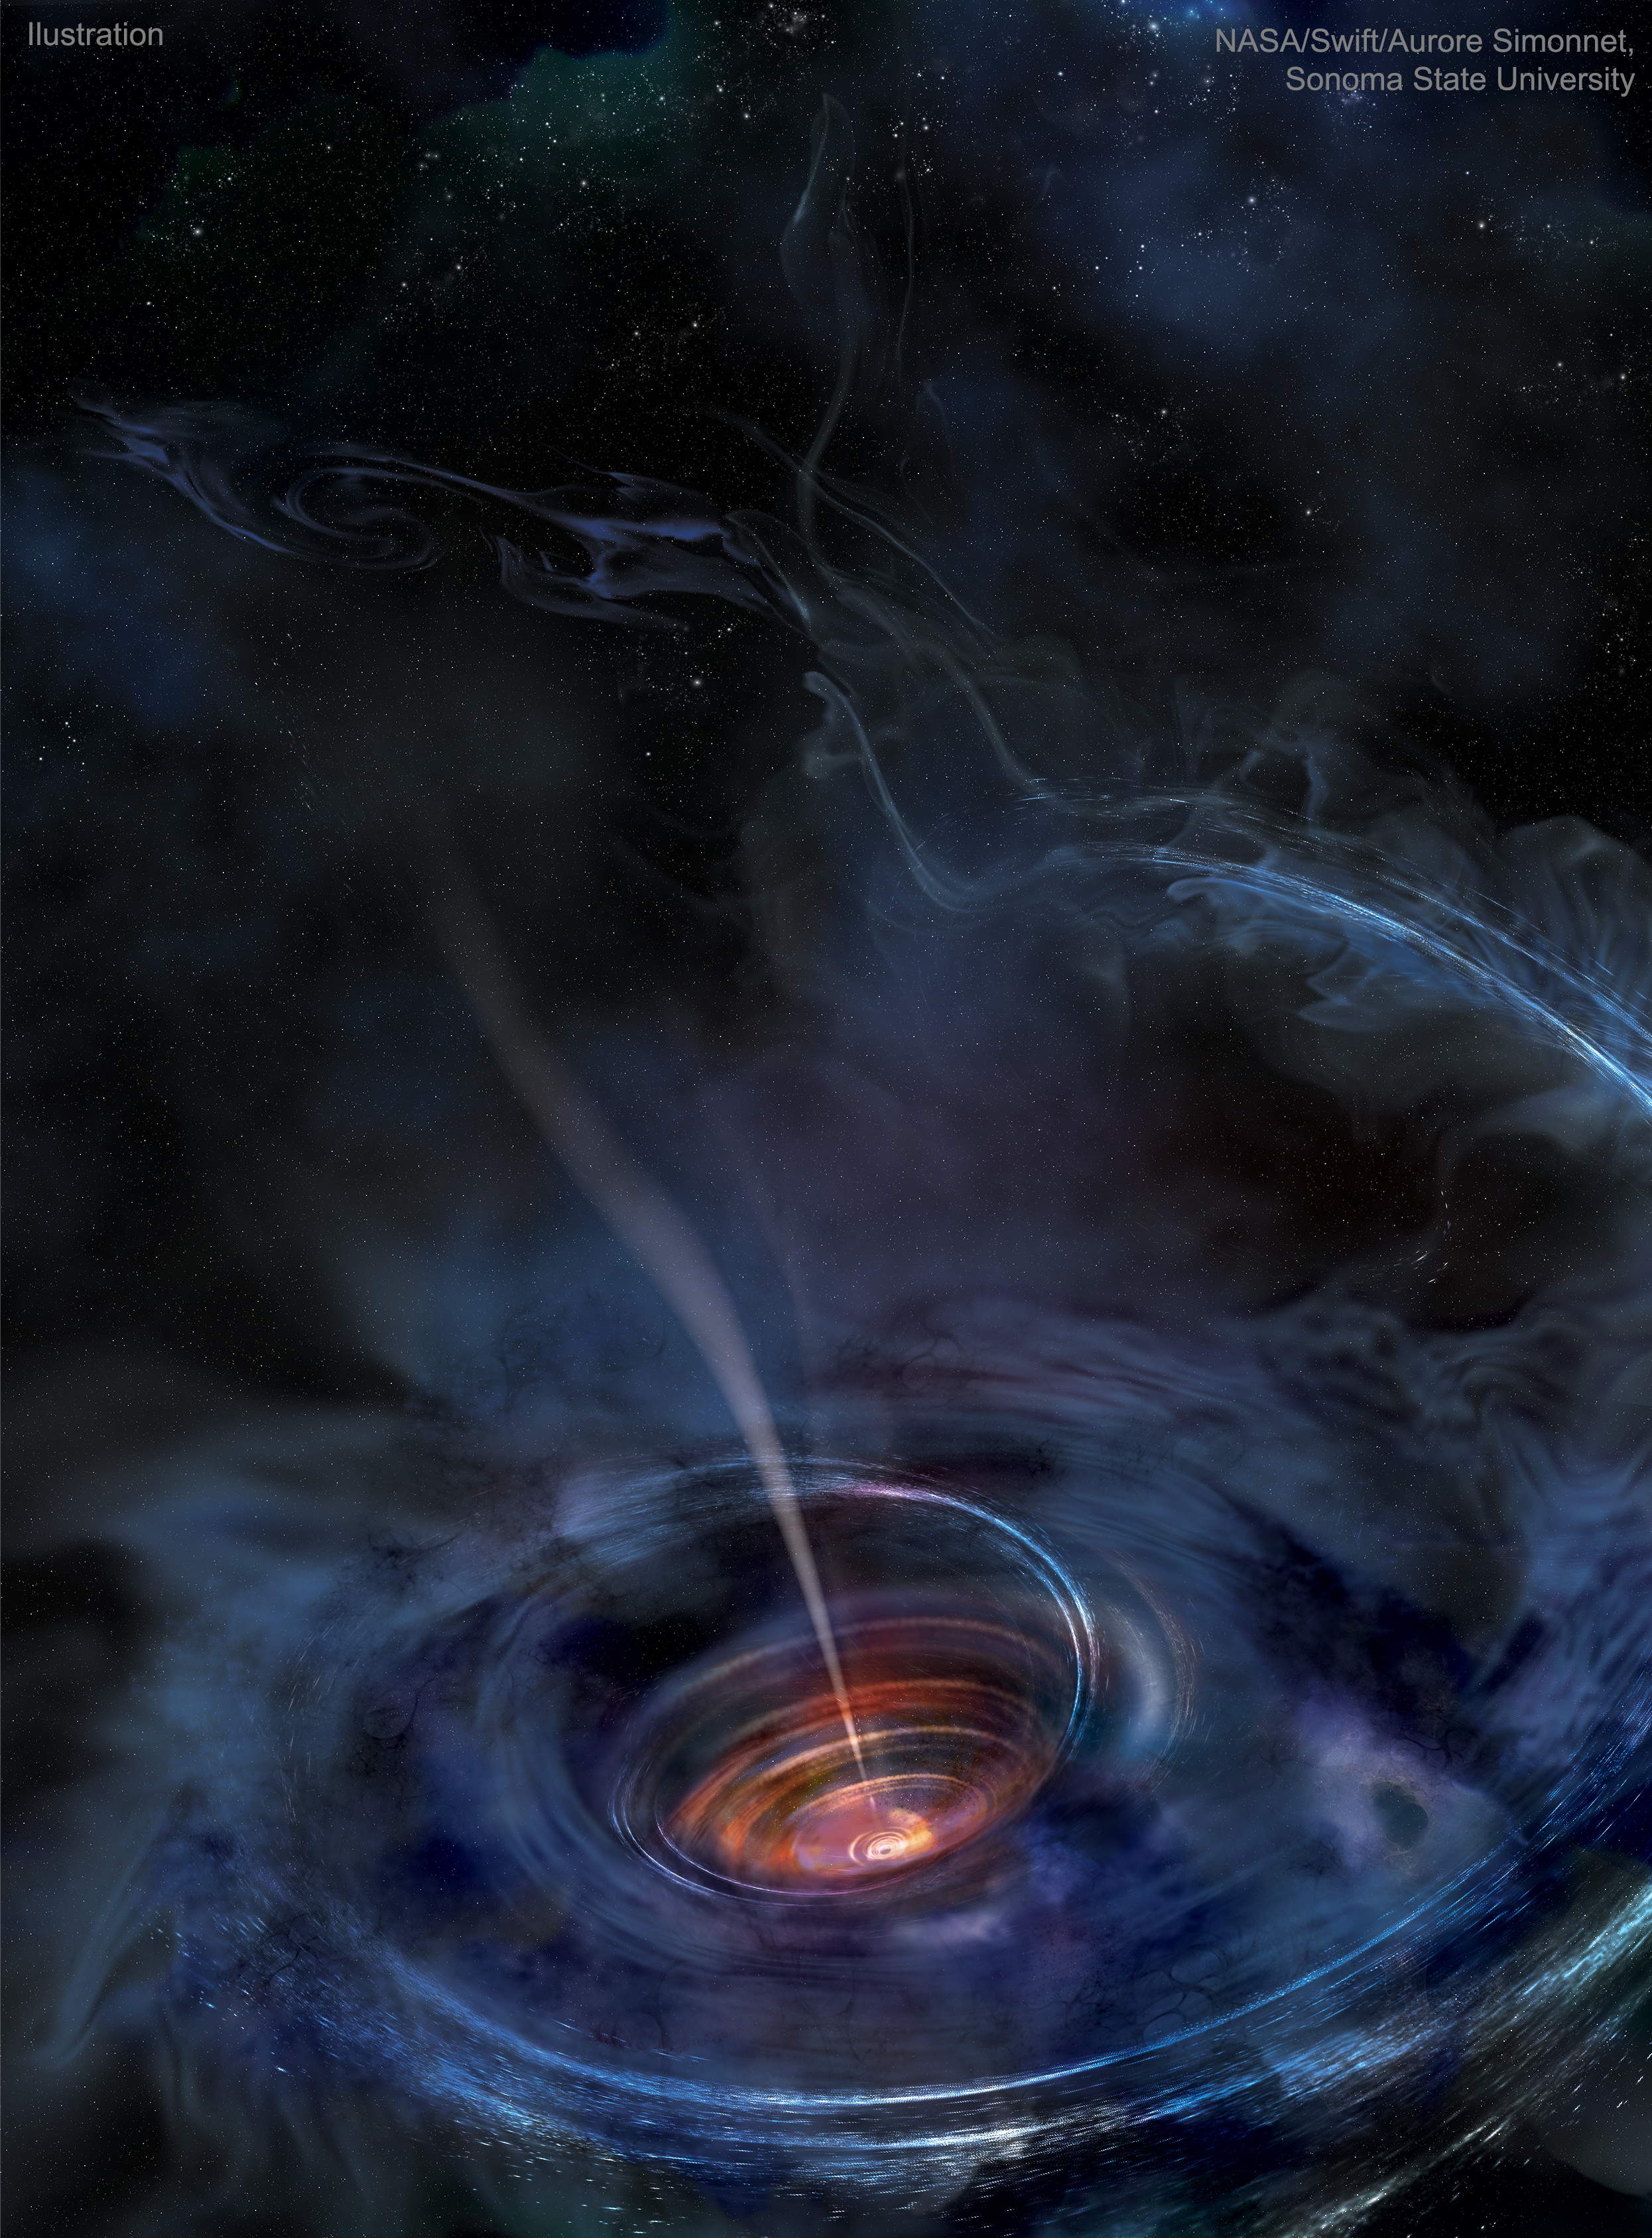 Black Hole Accreting with Jet by Aurore Simonnet - l'artboratoire